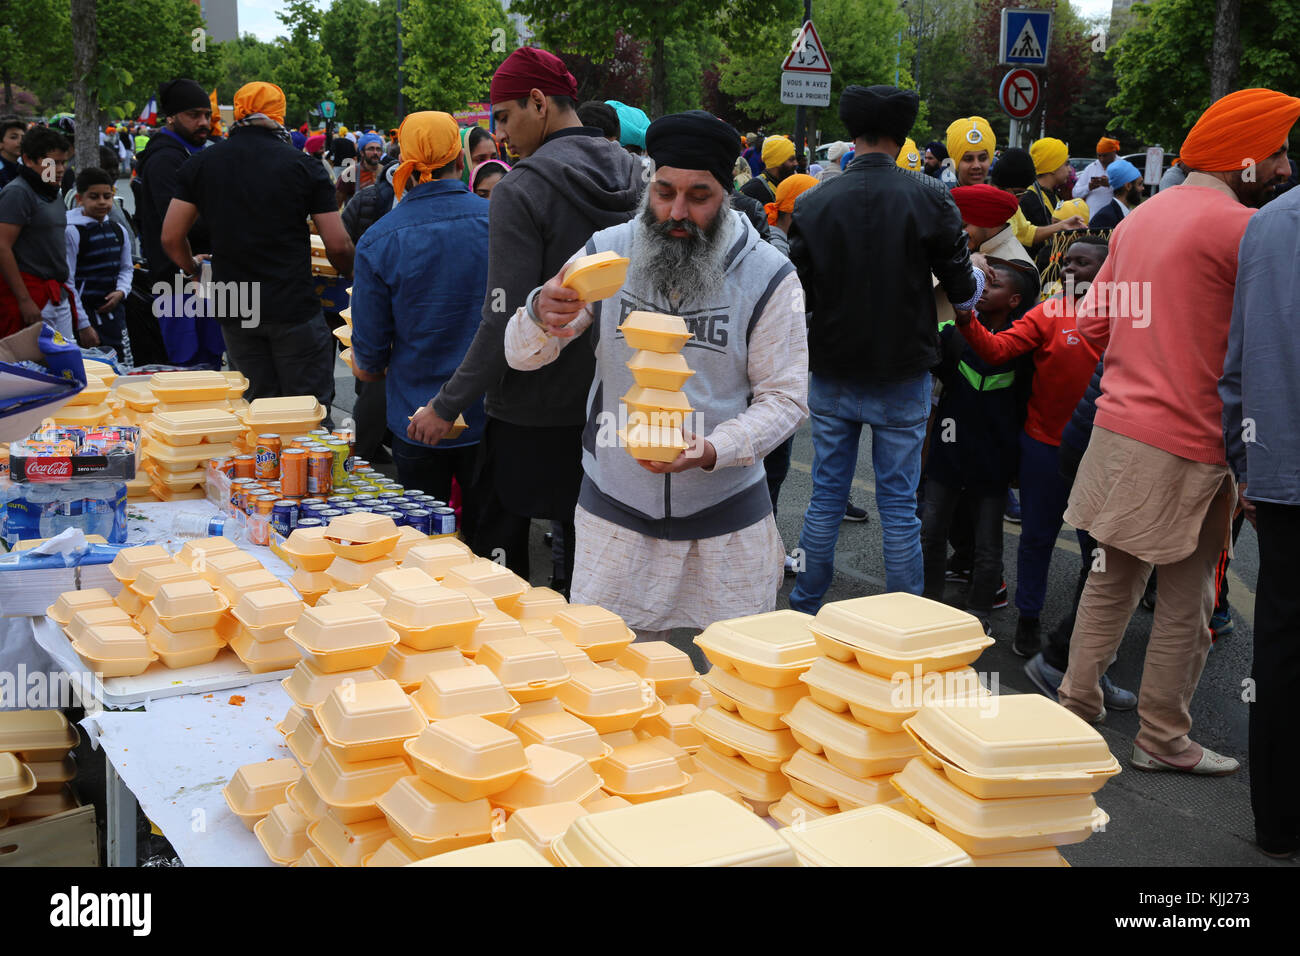 Sikhs feiern Vaisakhi Festival in Pantin, Frankreich. Kostenlose Verteilung von Nahrungsmitteln. Stockfoto